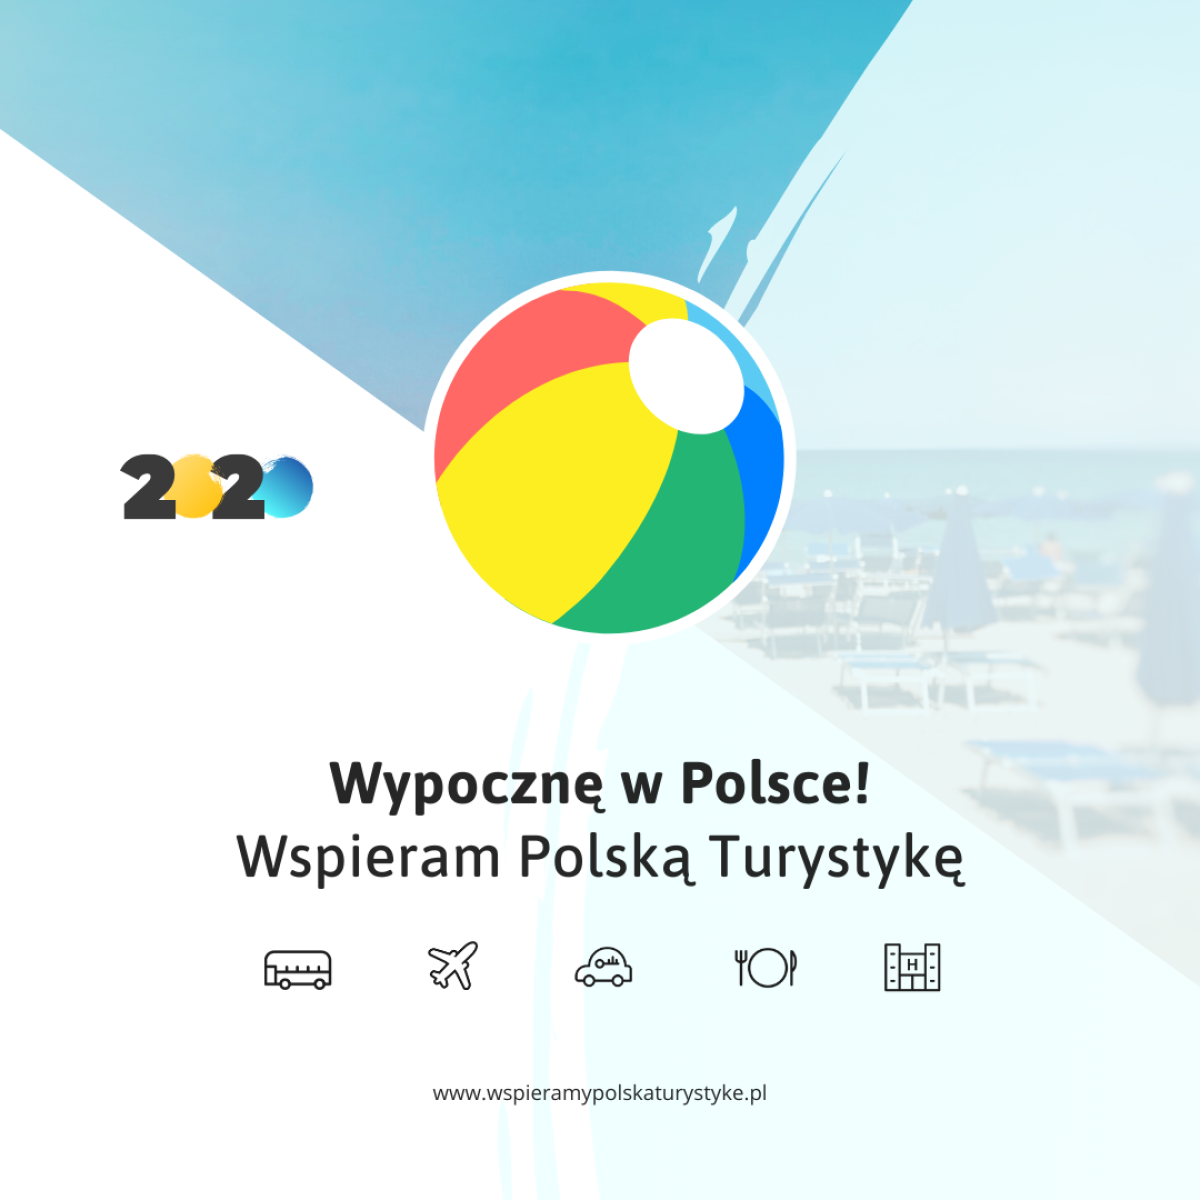 W tym roku urlop spędzamy w Polsce! Wspieraj polską turystykę.